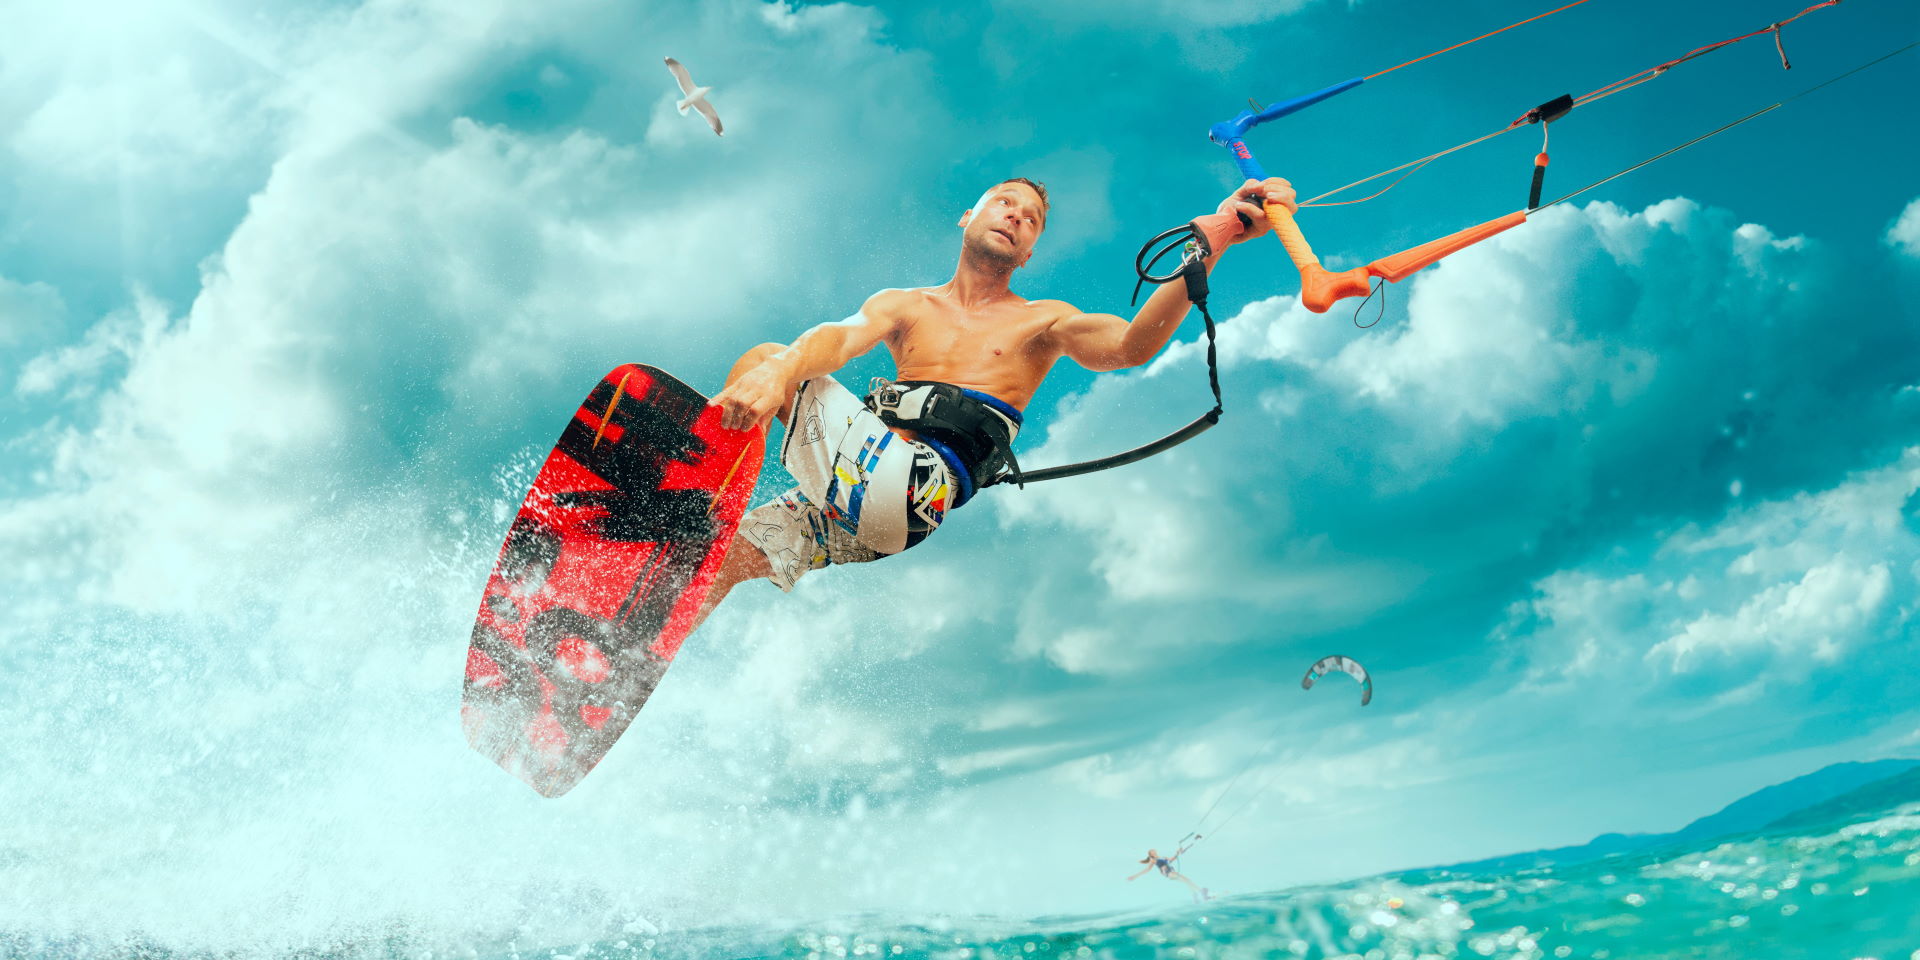 Ein durchtrainierter, sportlicher Mann betreibt Kitesurfing auf einer hohen Welle und hält sich am Seil fest